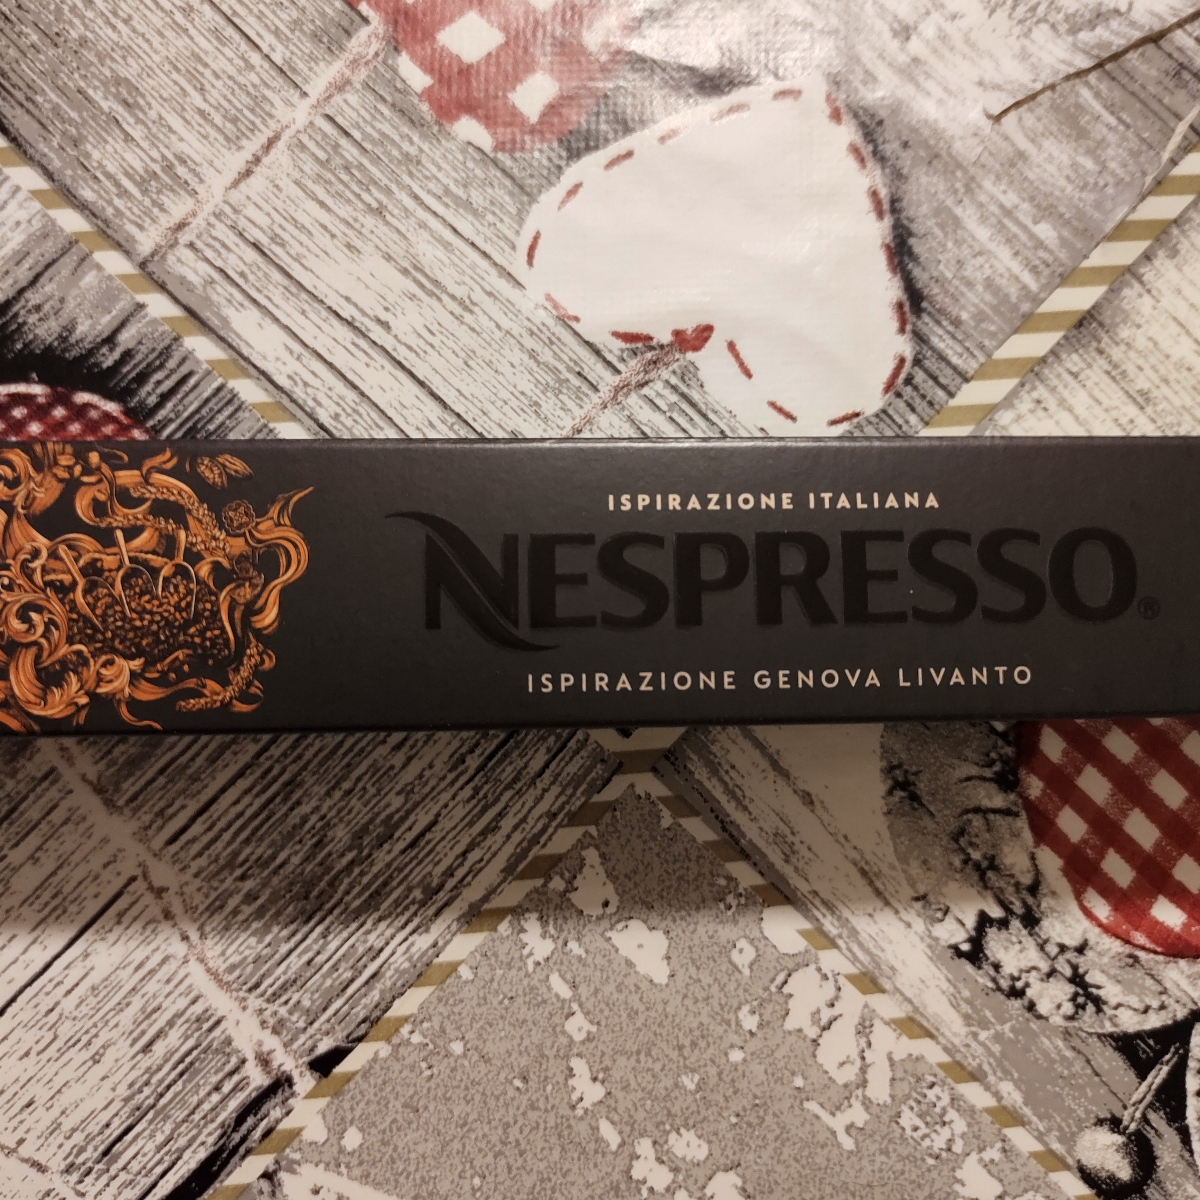 Nespresso Ispirazione Genova Livanto Reviews | abillion